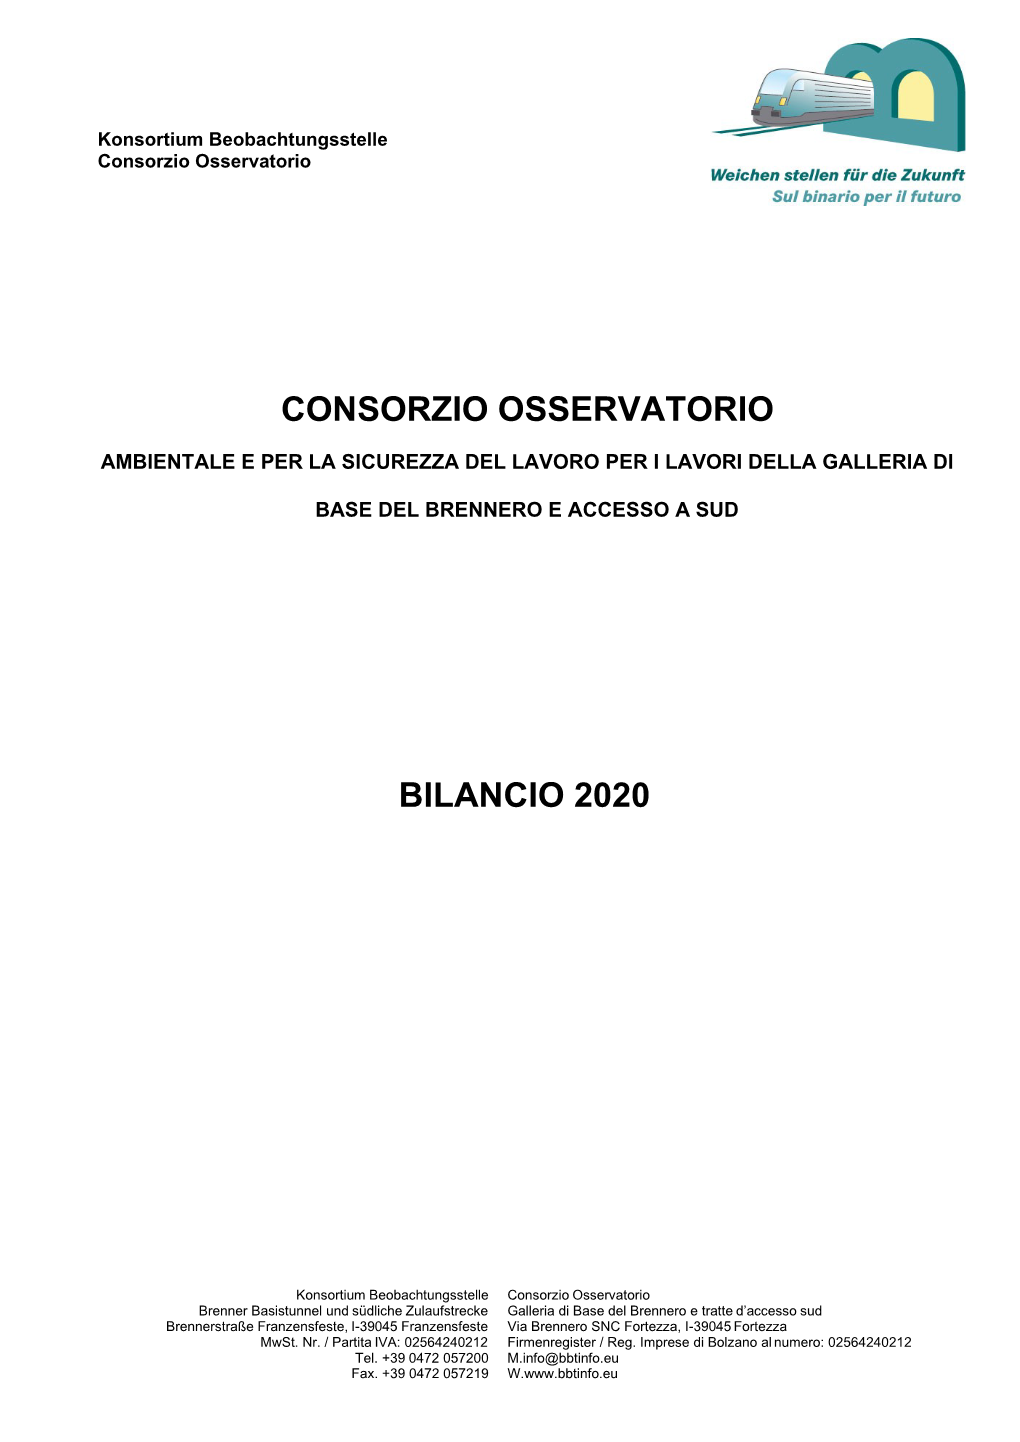 Relazione Di Bilancio 2020